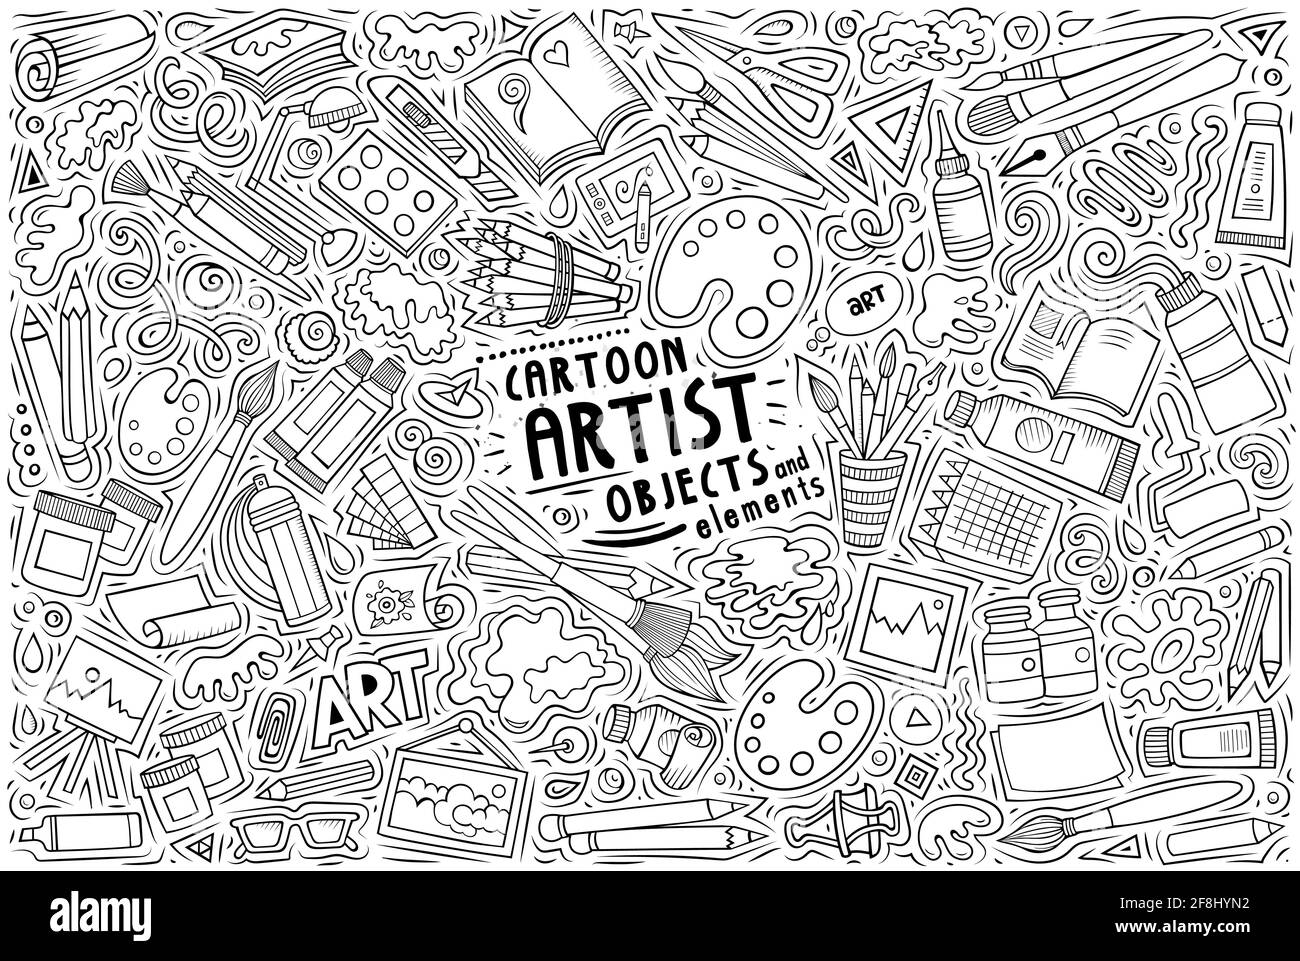 Linie Kunst Vektor Hand gezeichnete Doodle Cartoon Satz von Künstler Thema Artikel, Objekte und Symbole Stock Vektor